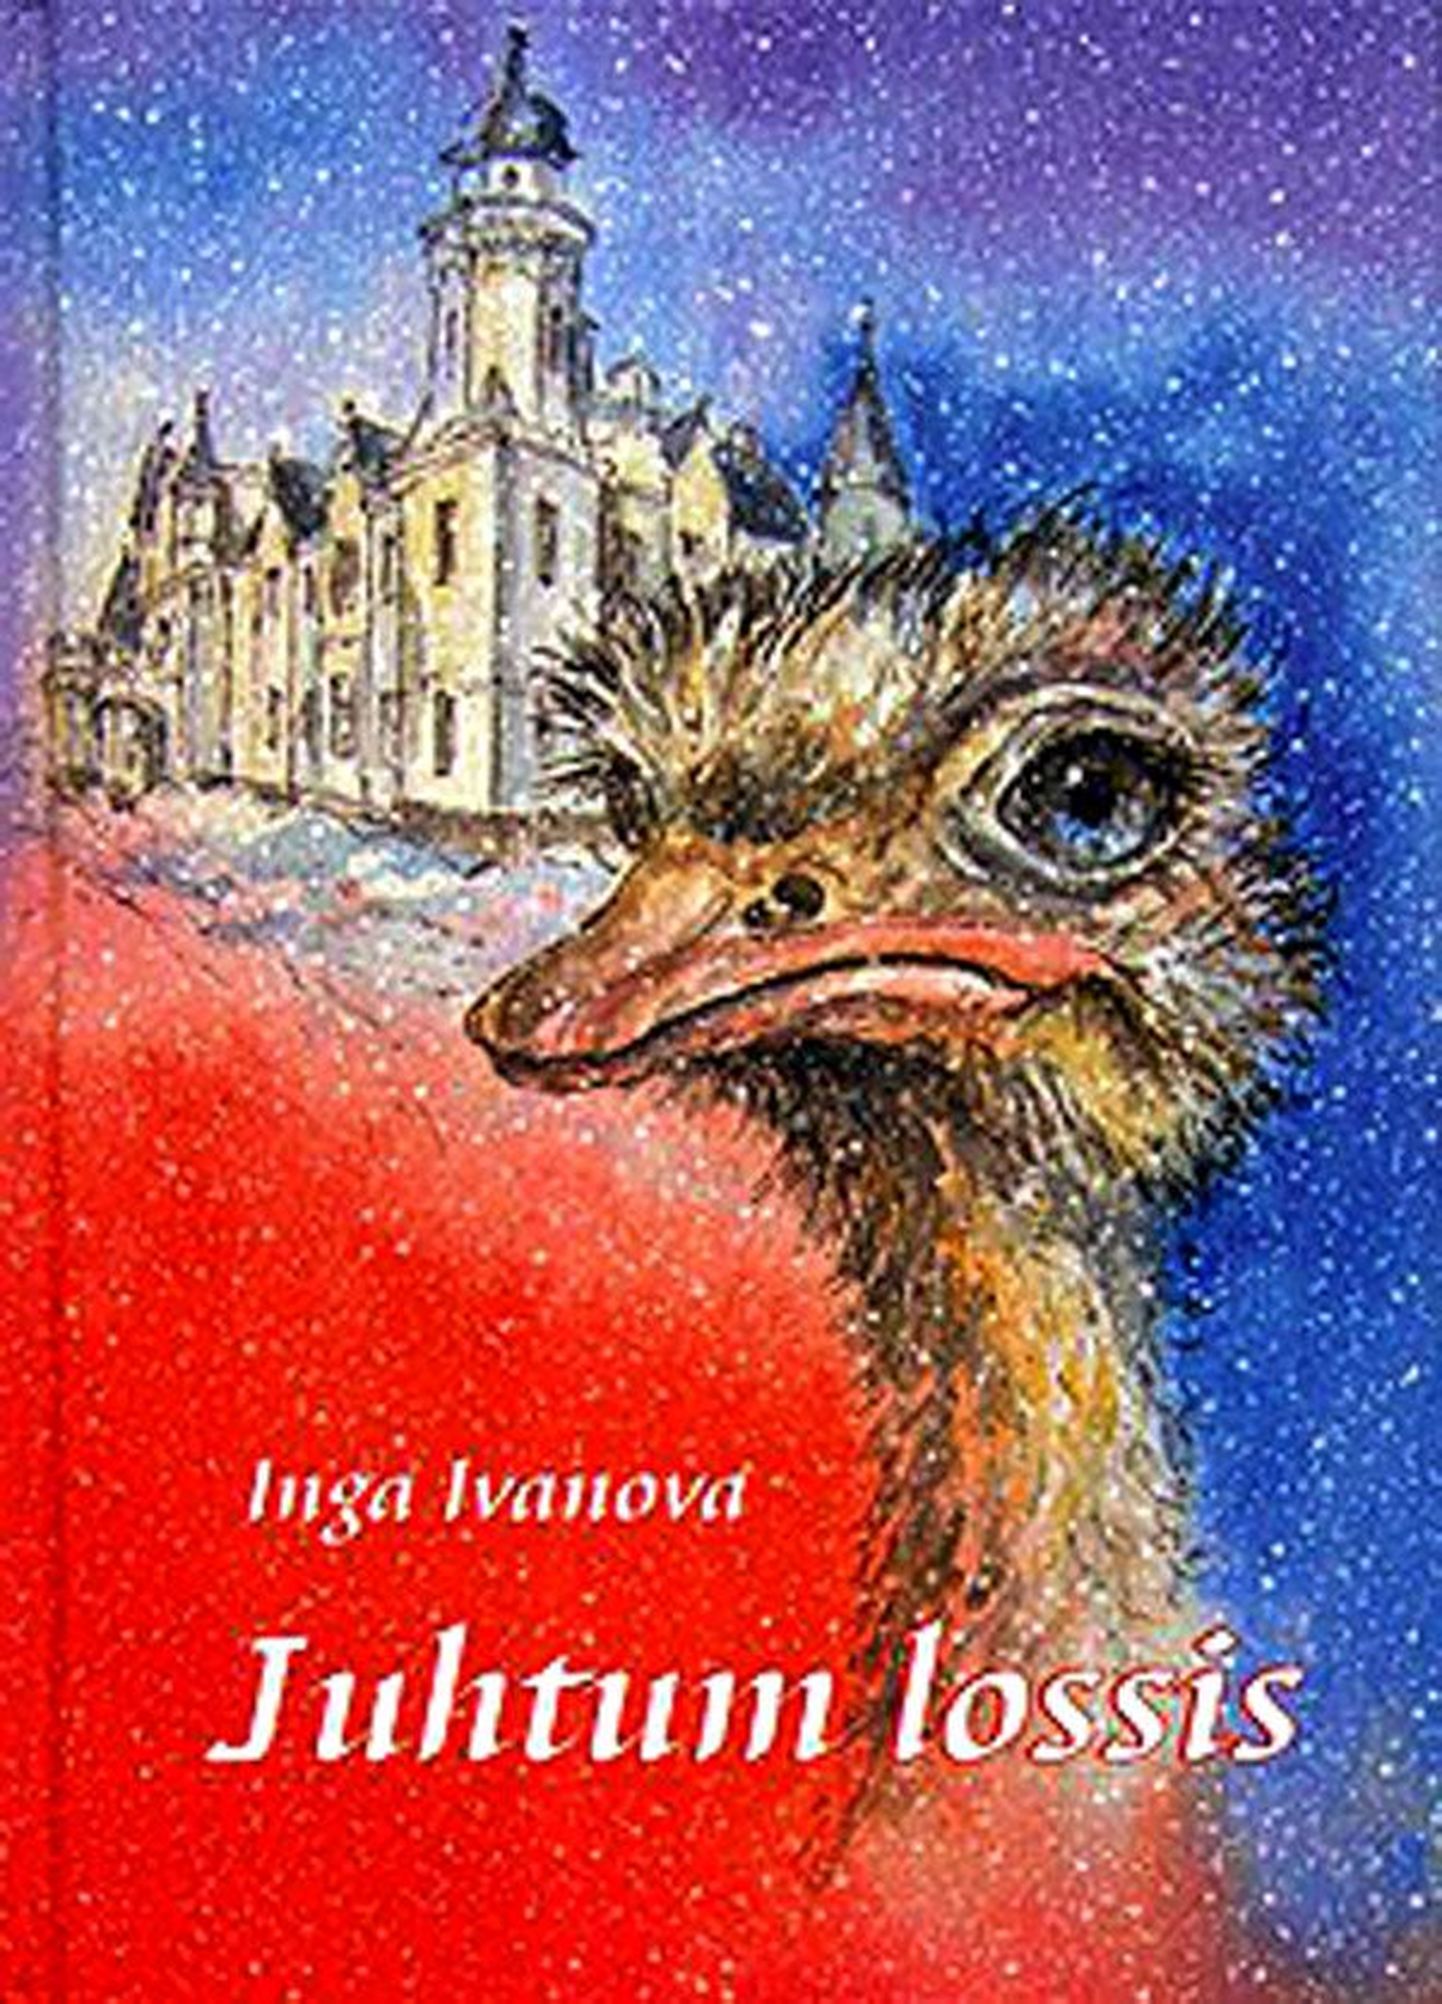 Inga Ivanova,
«Juhtum lossis»,
tõlkinud Ahti Kelder,
Illustreerinud Ülle Kuldkepp,
trükikoda Greif,
2013, 96 lk